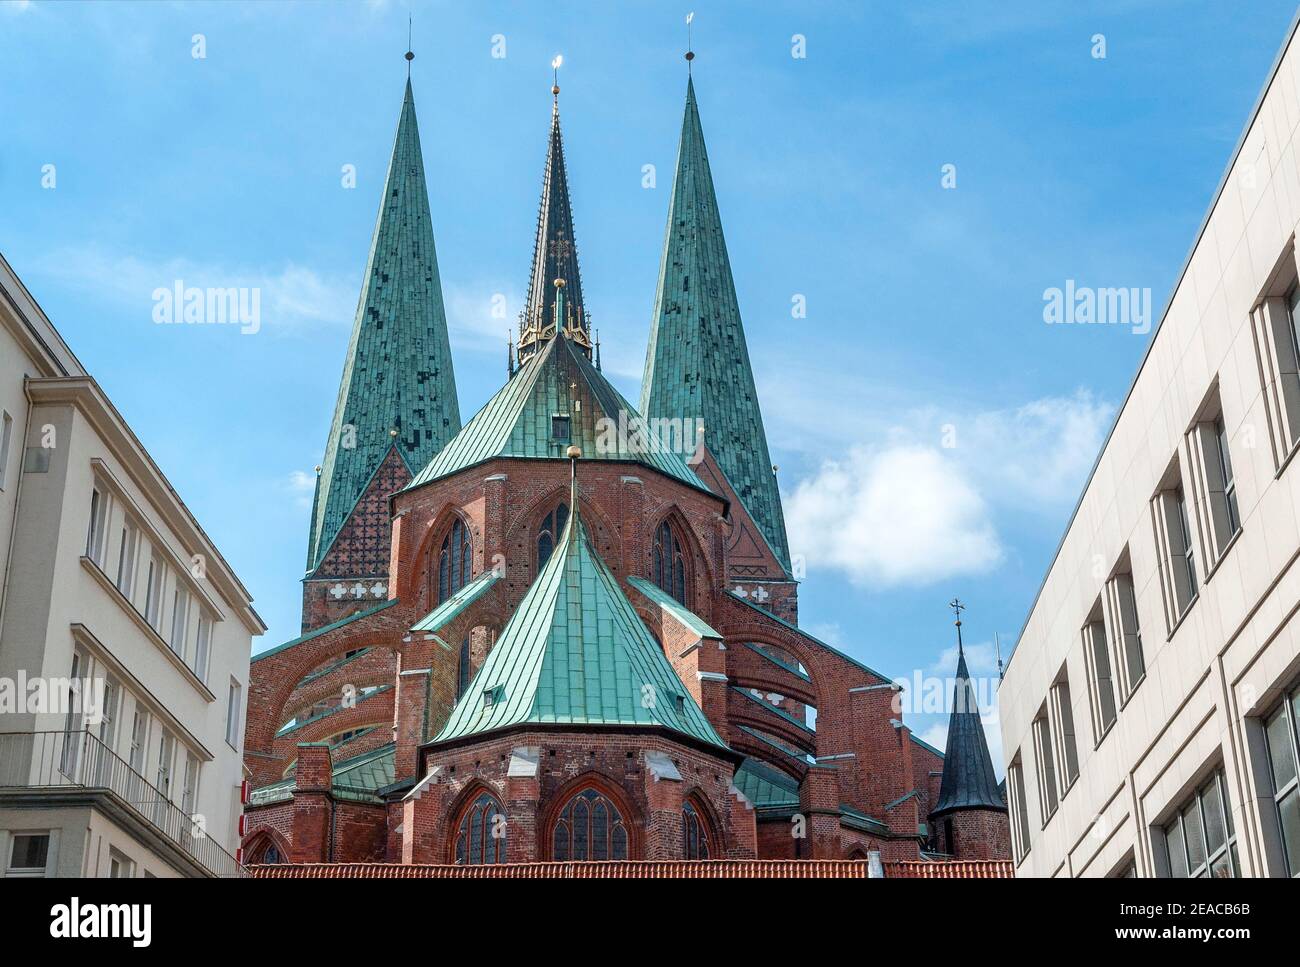 Allemagne, SH Schleswig-Holstein, ville hanséatique de Lübeck, Saint-Marien zu Lübeck de l'est, construit 1250-1350. Le Marienkirche de Lübeck est l'église mère du gothique de brique du nord de l'Allemagne avec la plus haute voûte de brique au monde. C'est un symbole de puissance et de prospérité dans la vieille ville hanséatique, également connue sous le nom de ville des sept tours. Banque D'Images